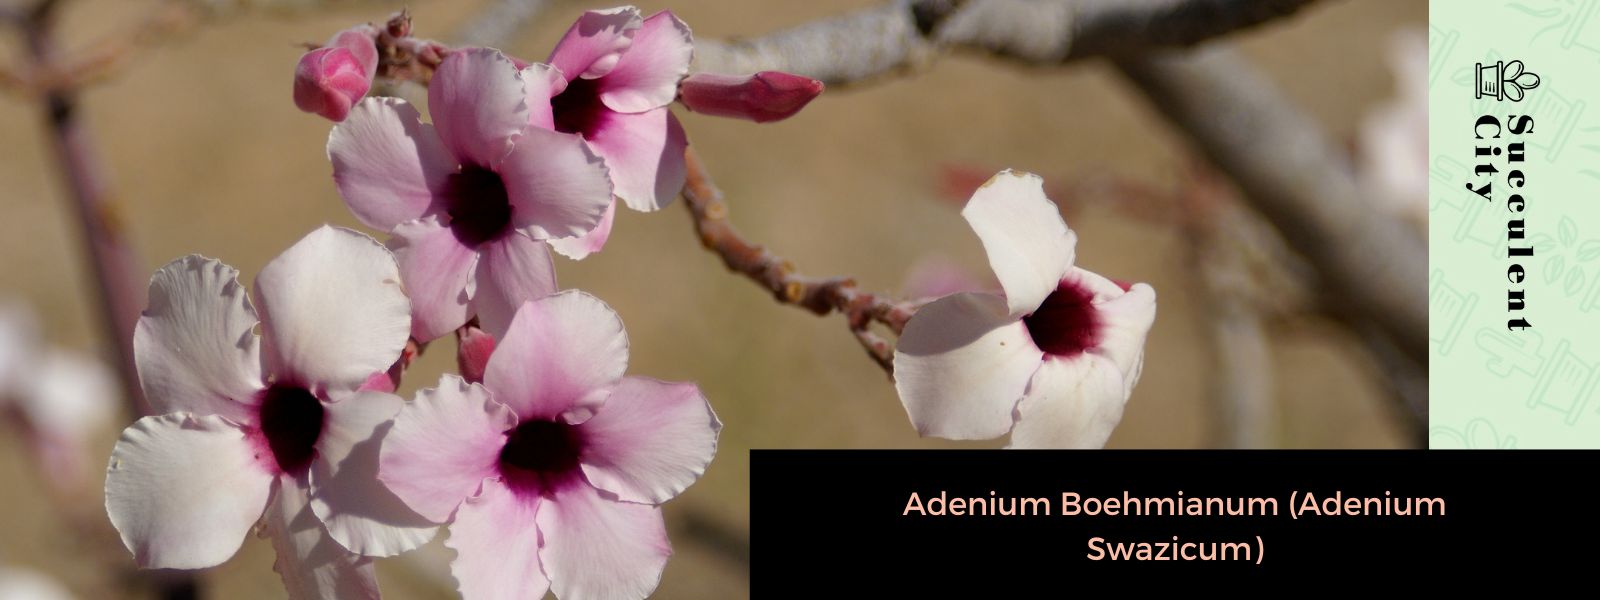 Adenium boehmianum (Adenium swazicum)